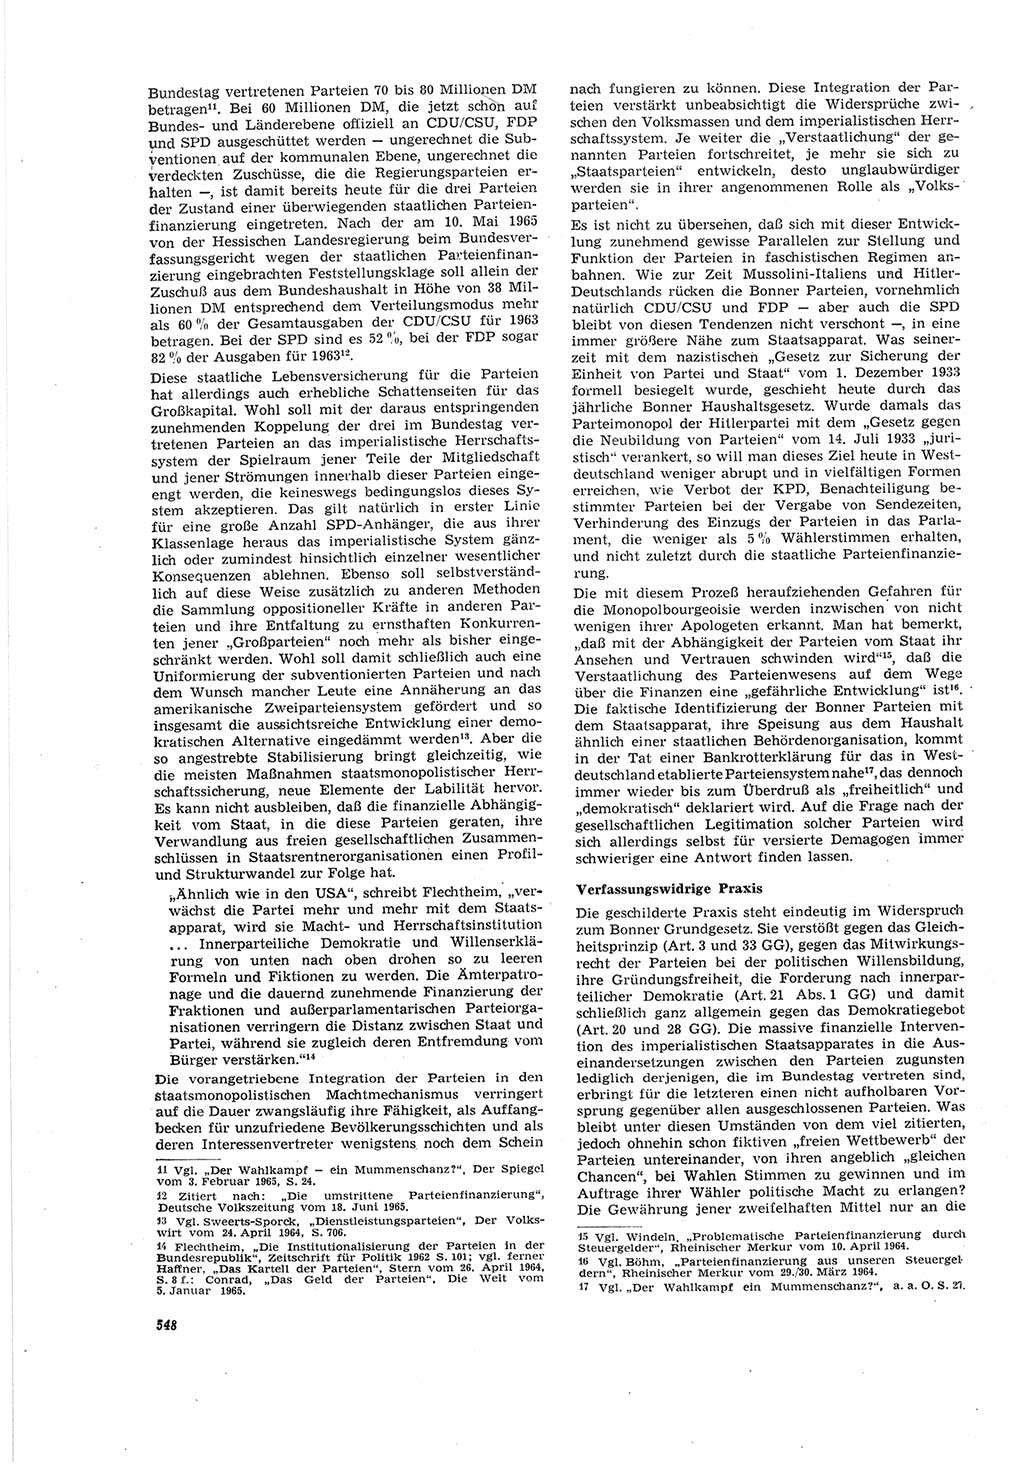 Neue Justiz (NJ), Zeitschrift für Recht und Rechtswissenschaft [Deutsche Demokratische Republik (DDR)], 19. Jahrgang 1965, Seite 548 (NJ DDR 1965, S. 548)